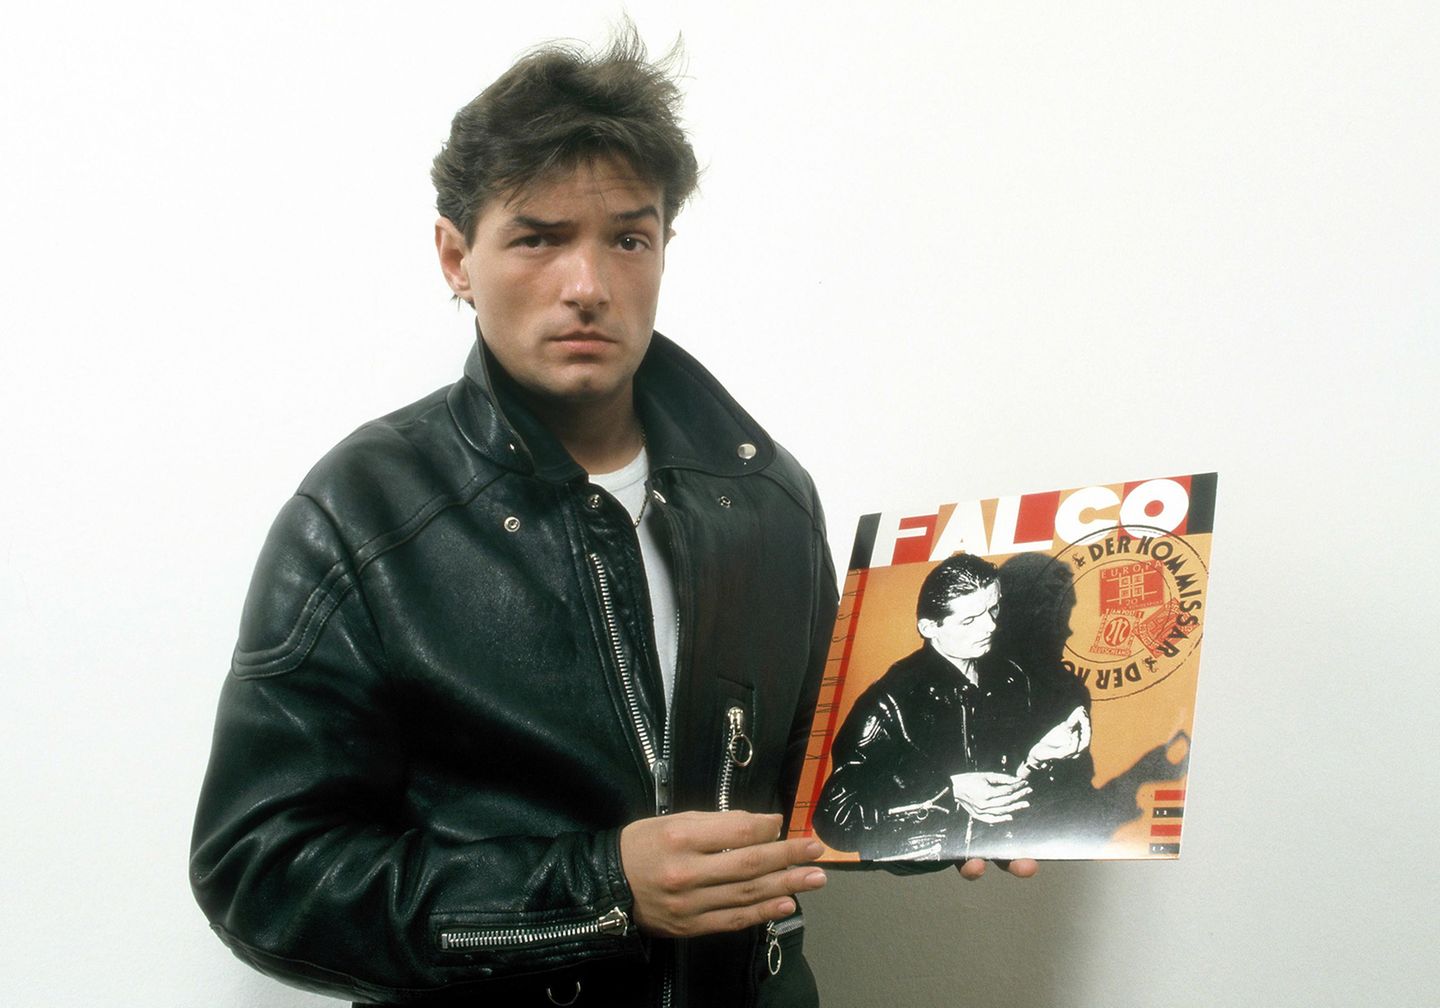 "Der Kommissar" wurde Falcos erster Hit. Veröffentlicht im Herbst 1981 landete der Titel 1982 in den Charts europa- und auch weltweit auf Top-Positionen. Die Platte wurde über sieben Millionen Mal verkauft.